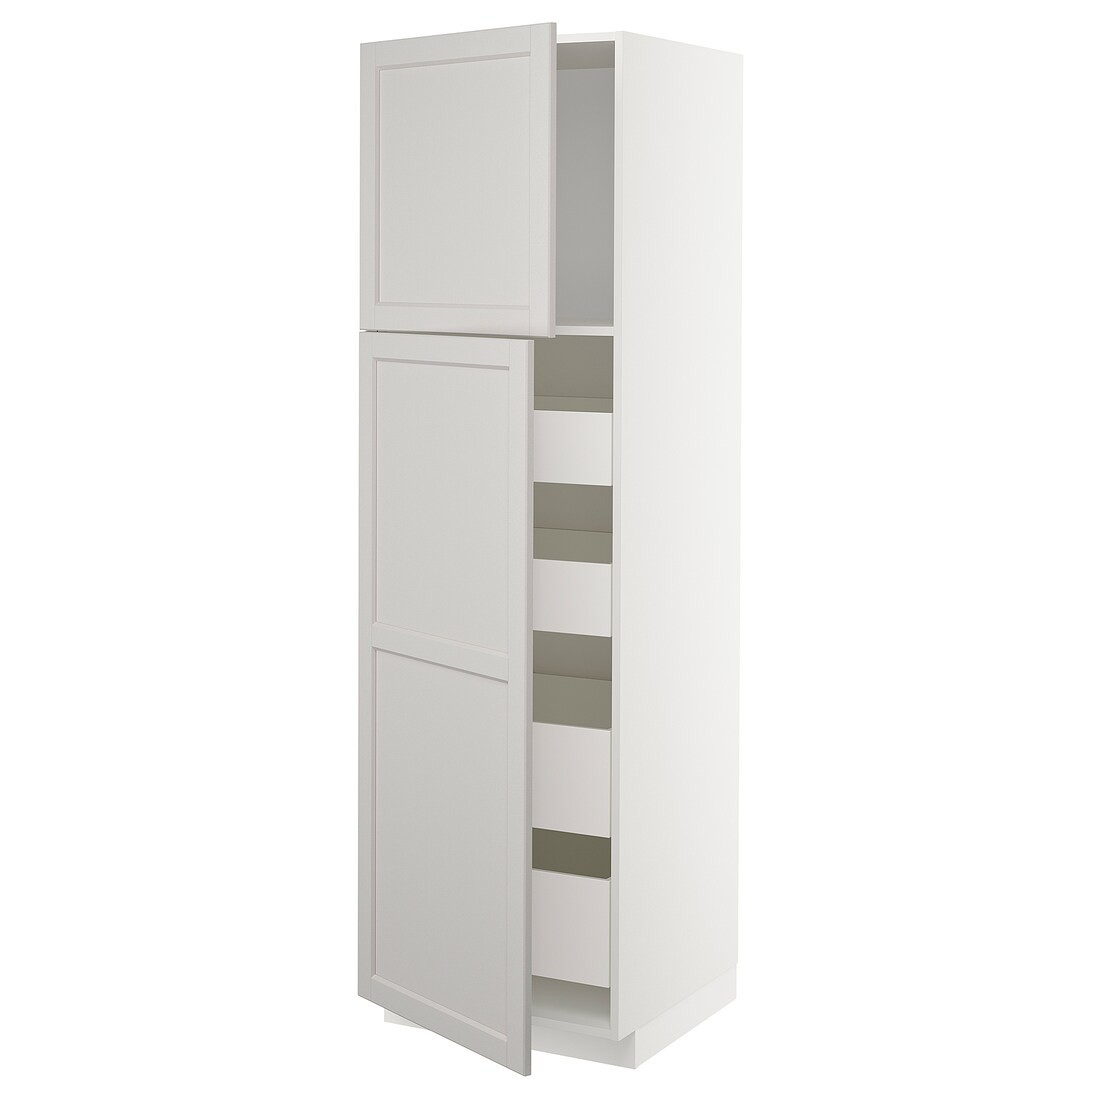 IKEA METOD МЕТОД / MAXIMERA МАКСИМЕРА Шкаф высокий 2 двери / 4 ящика, белый / Lerhyttan светло-серый, 60x60x200 см 99466467 | 994.664.67